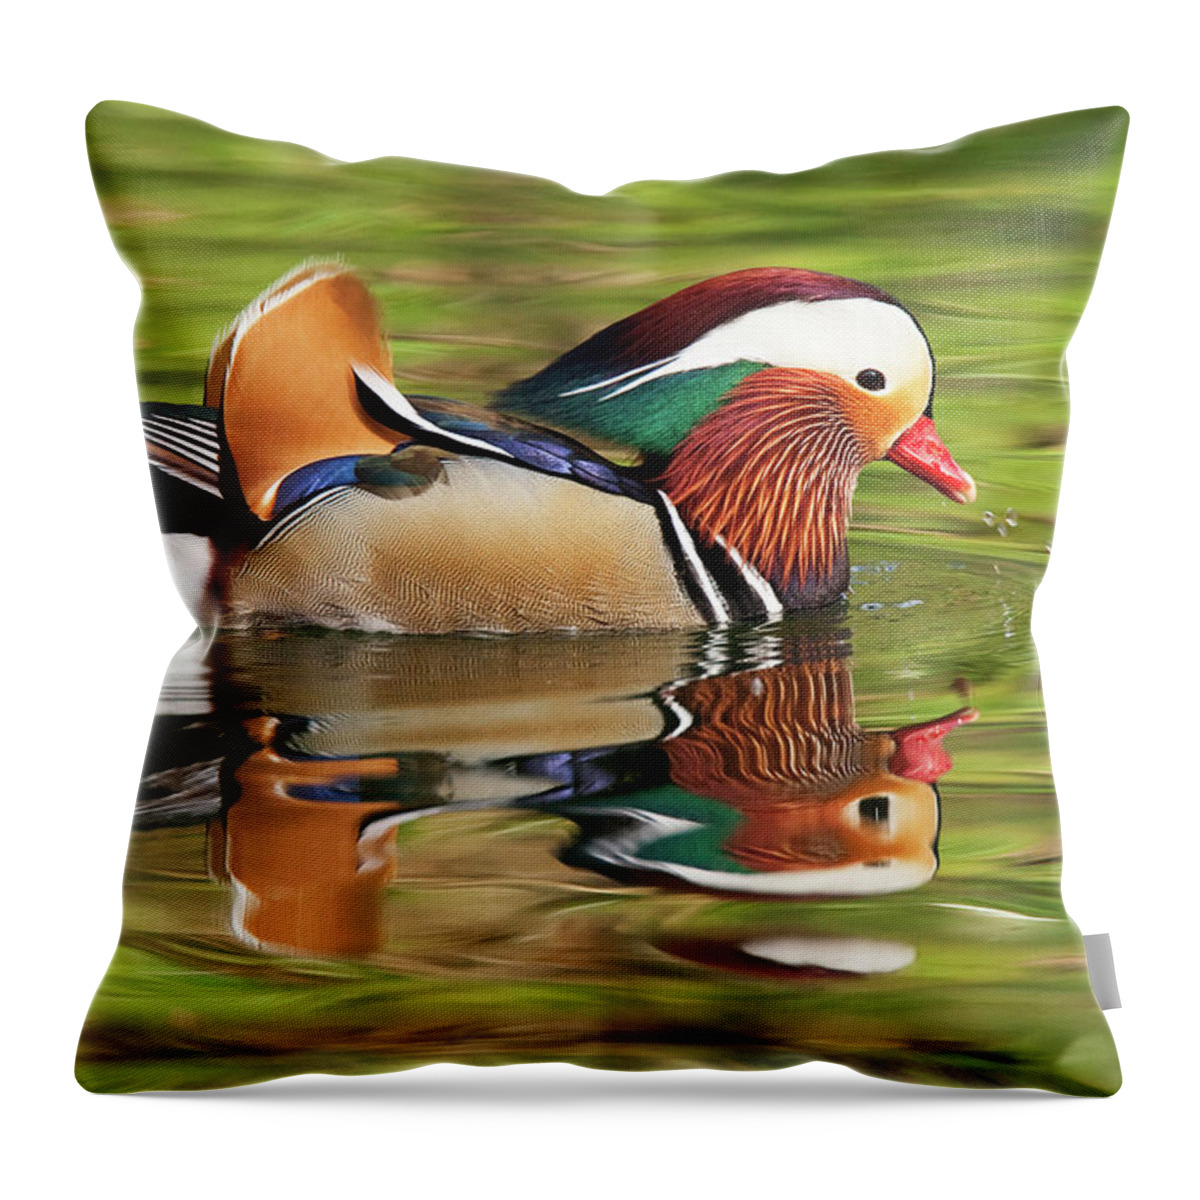 Mandarin Duck Throw Pillow featuring the photograph Mandarin Duck by Ram Vasudev